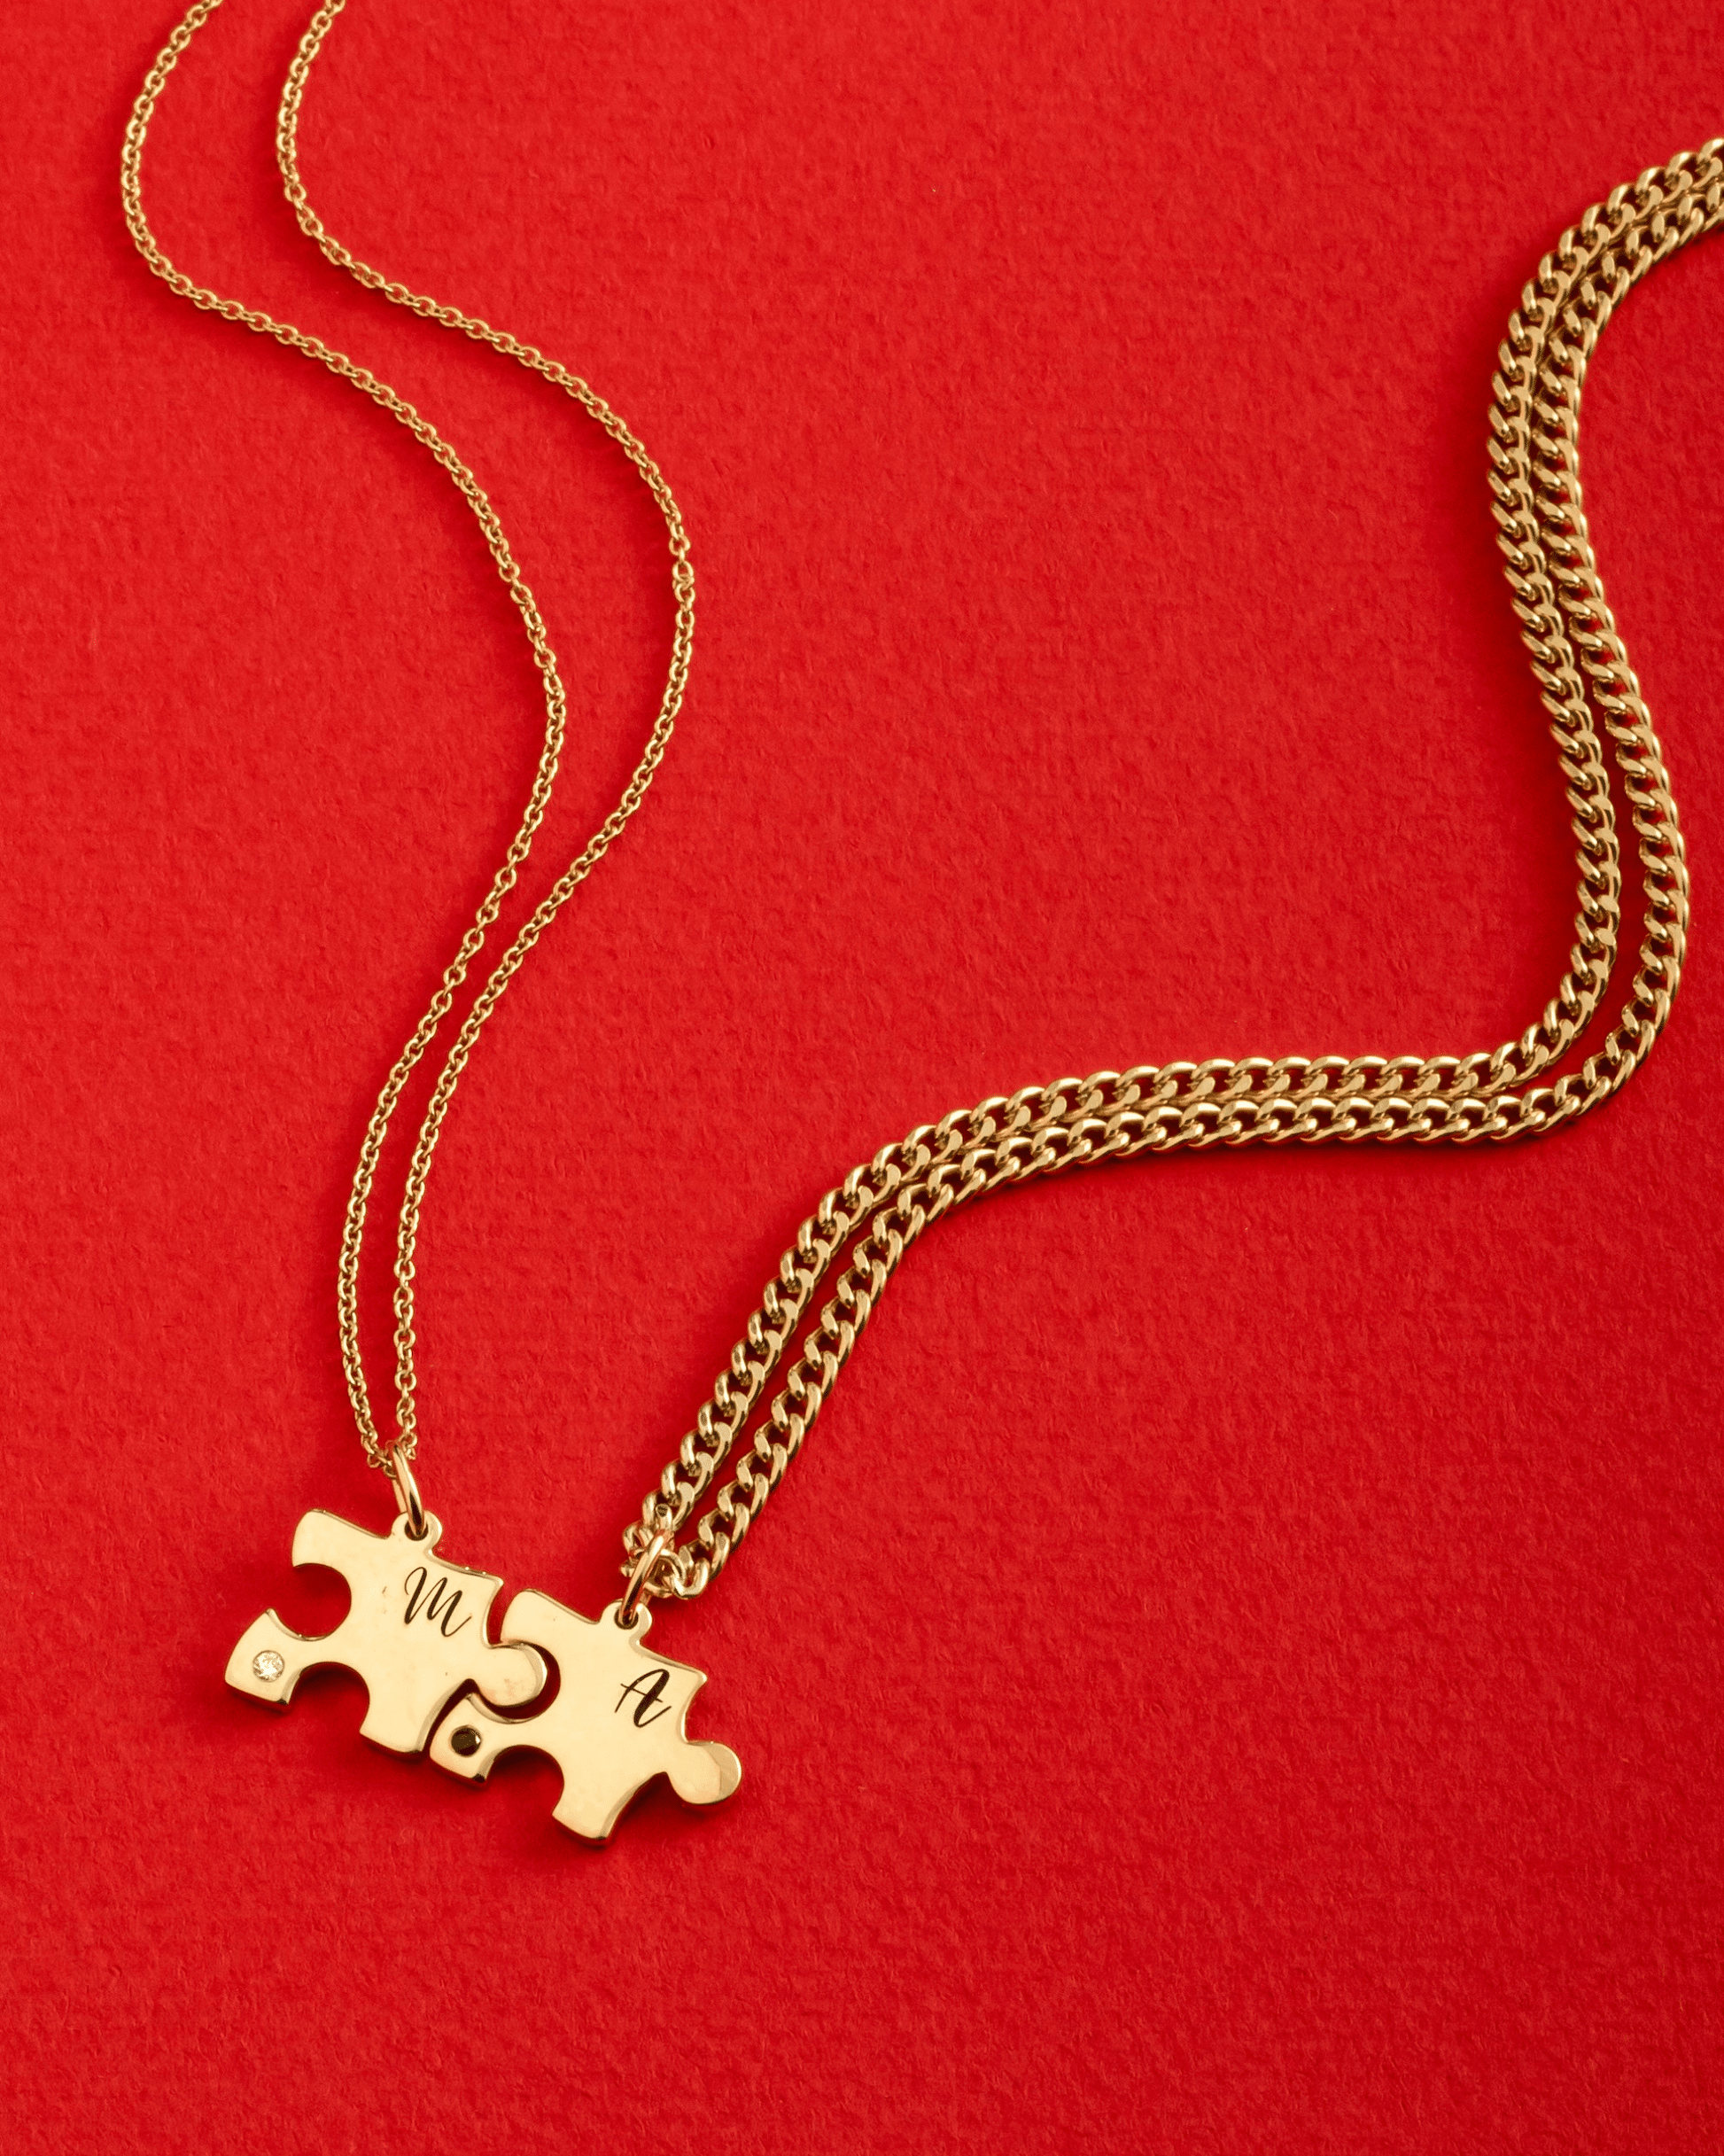 Puzzle Necklaces for Couple - 18K Gold Vermeil Necklaces magal-dev 